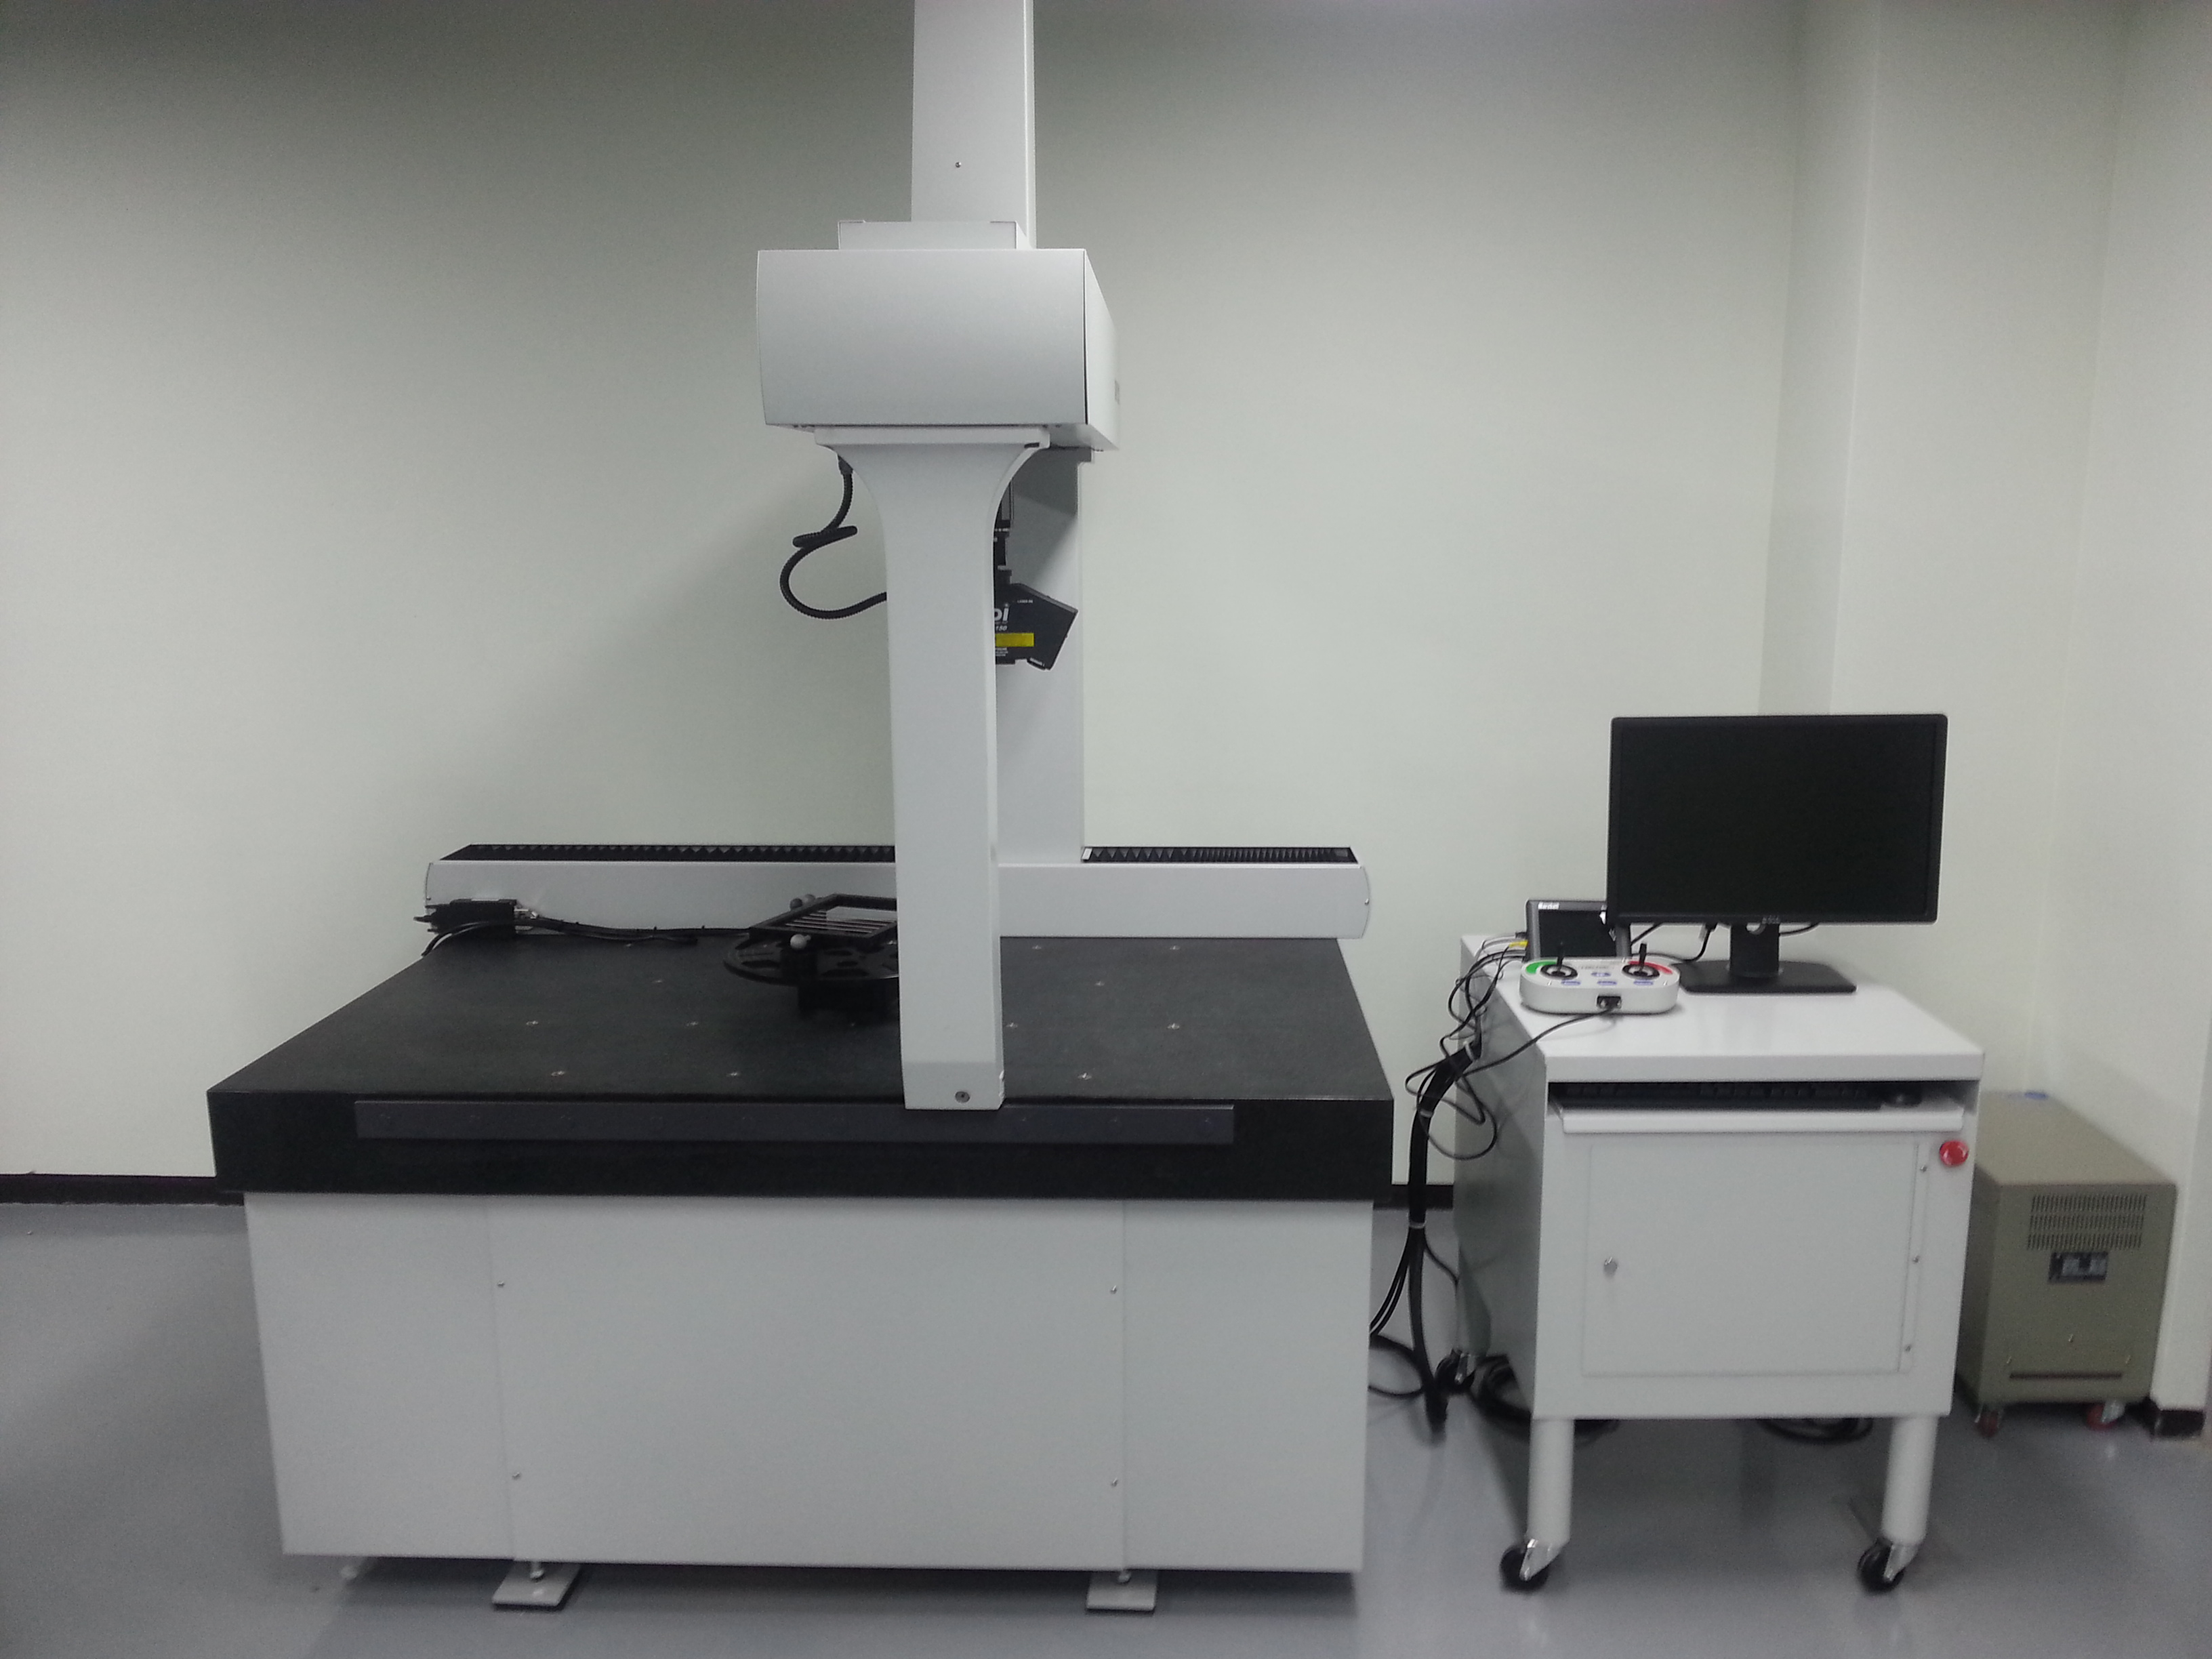 3차원 레이져 스캐닝 시스템(3D laser scanning system)